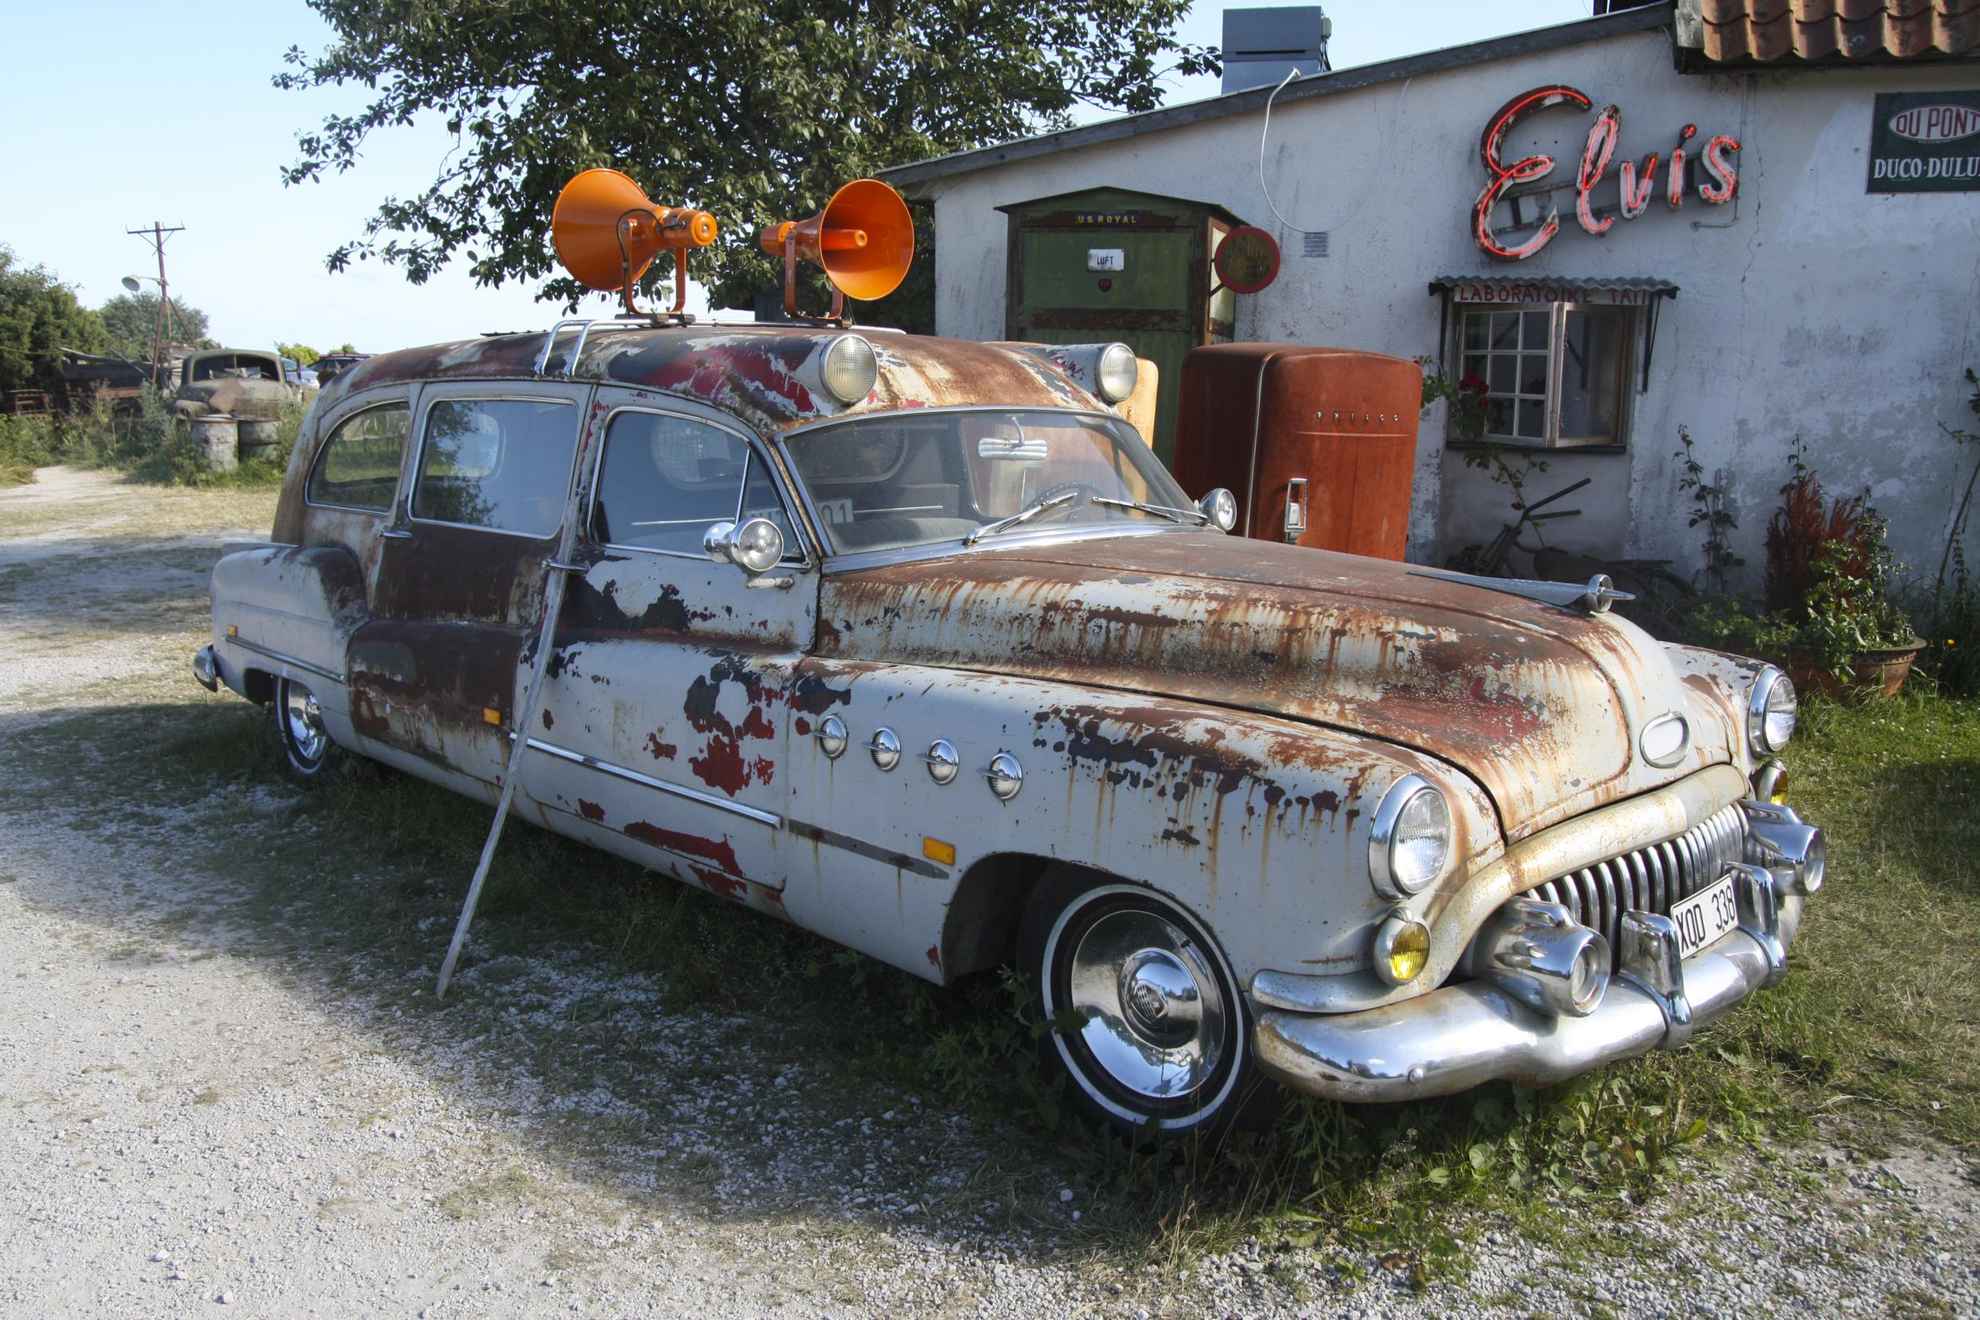 Een oude roestige auto met sirenes op het dak voor een oud benzinestation.